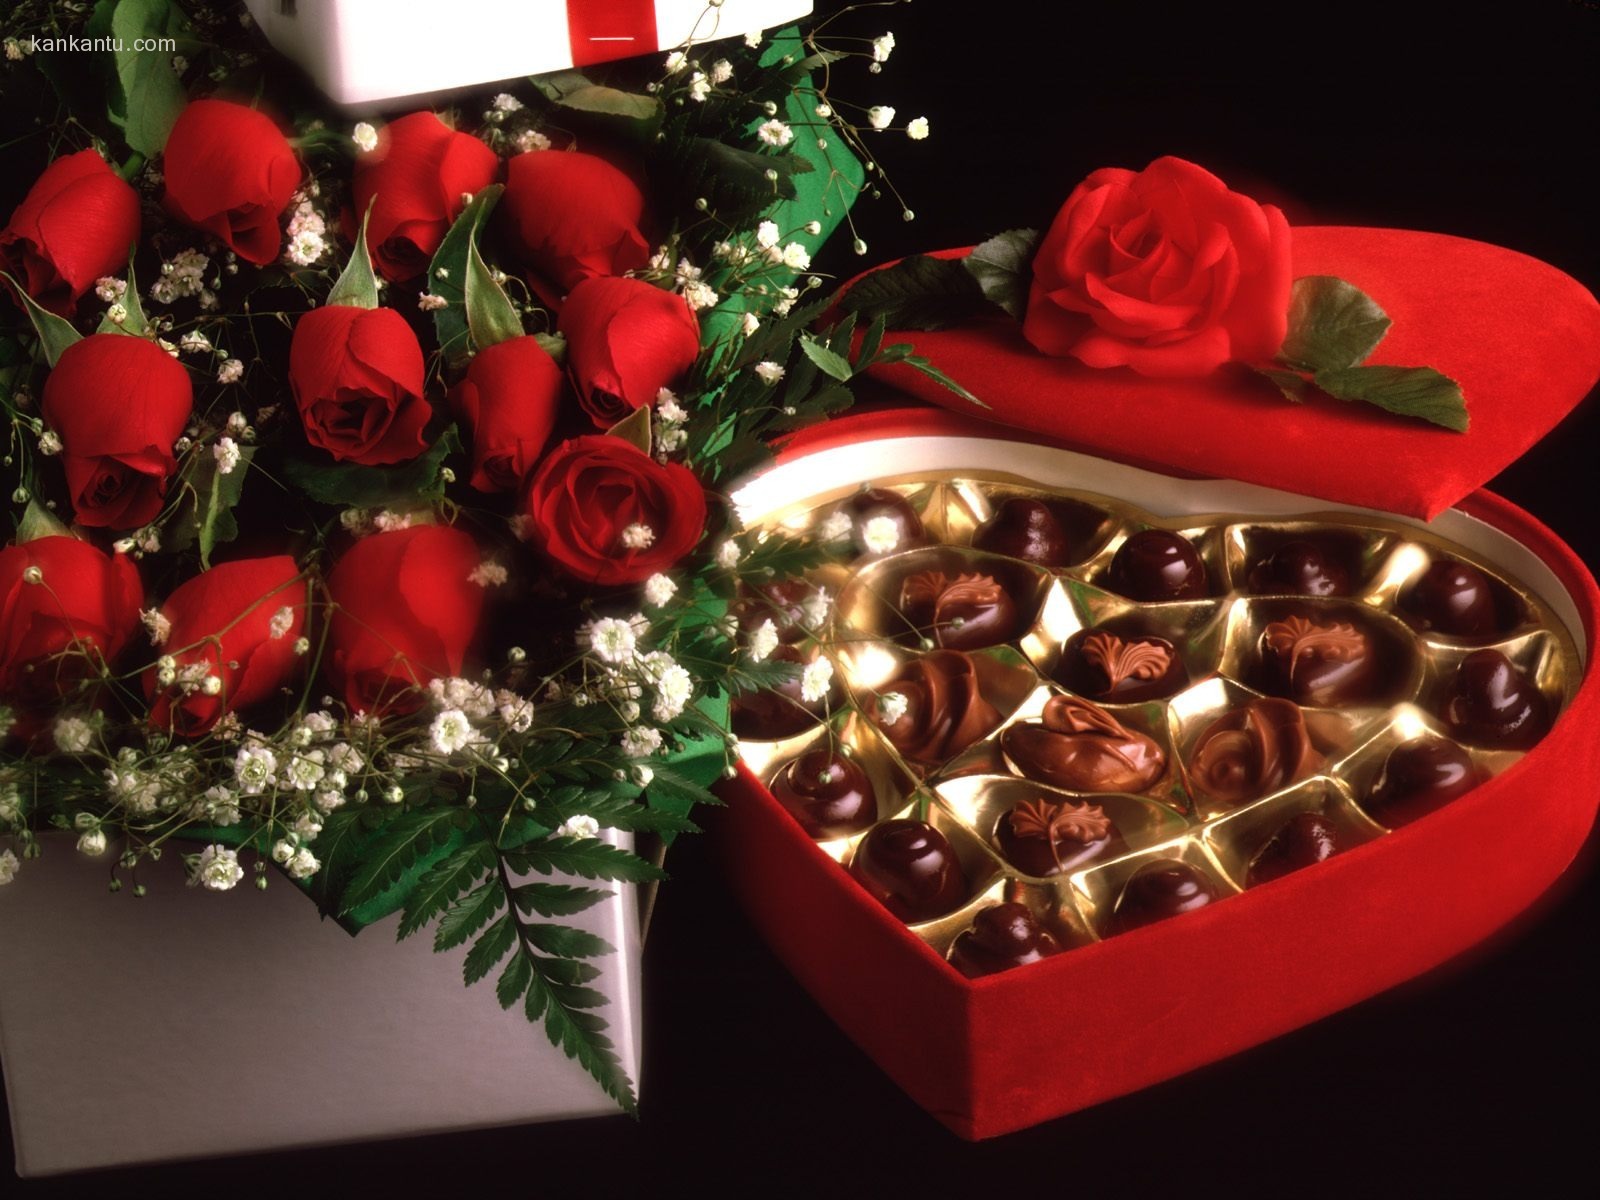 Le indélébile Saint Valentin au chocolat #4 - 1600x1200